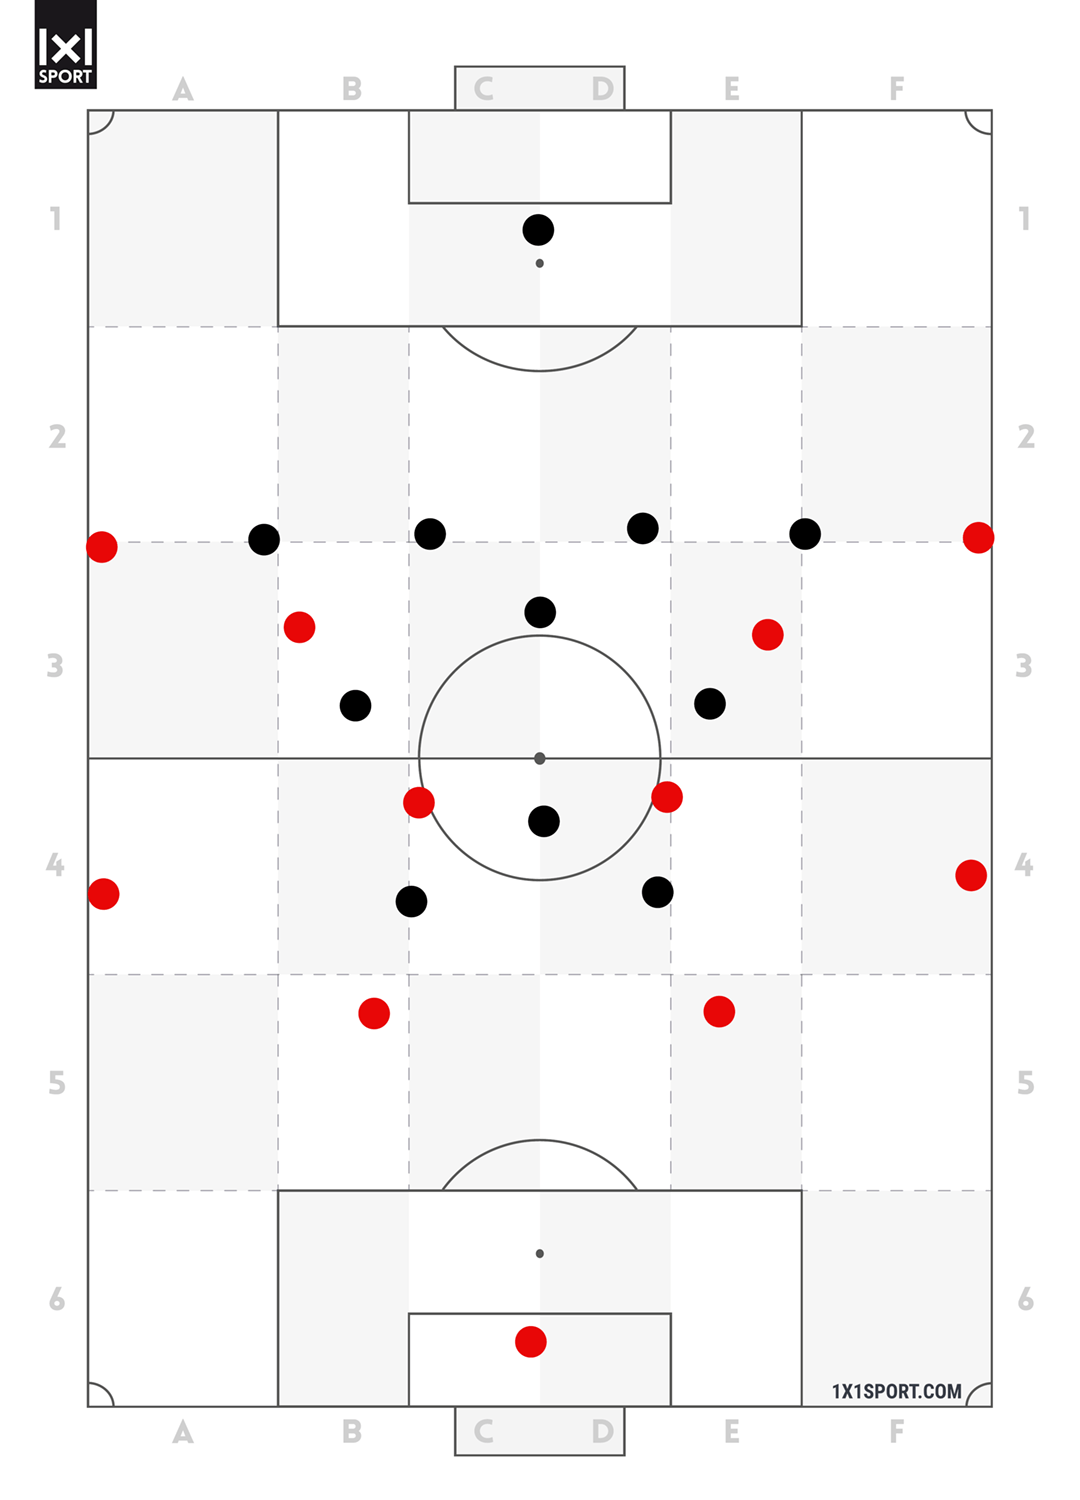 Eine Gegenüberstellung der offensiven Grundordnung 4-2-2-2 mit der defensiven Grundordnung 4-1-2-1-2.